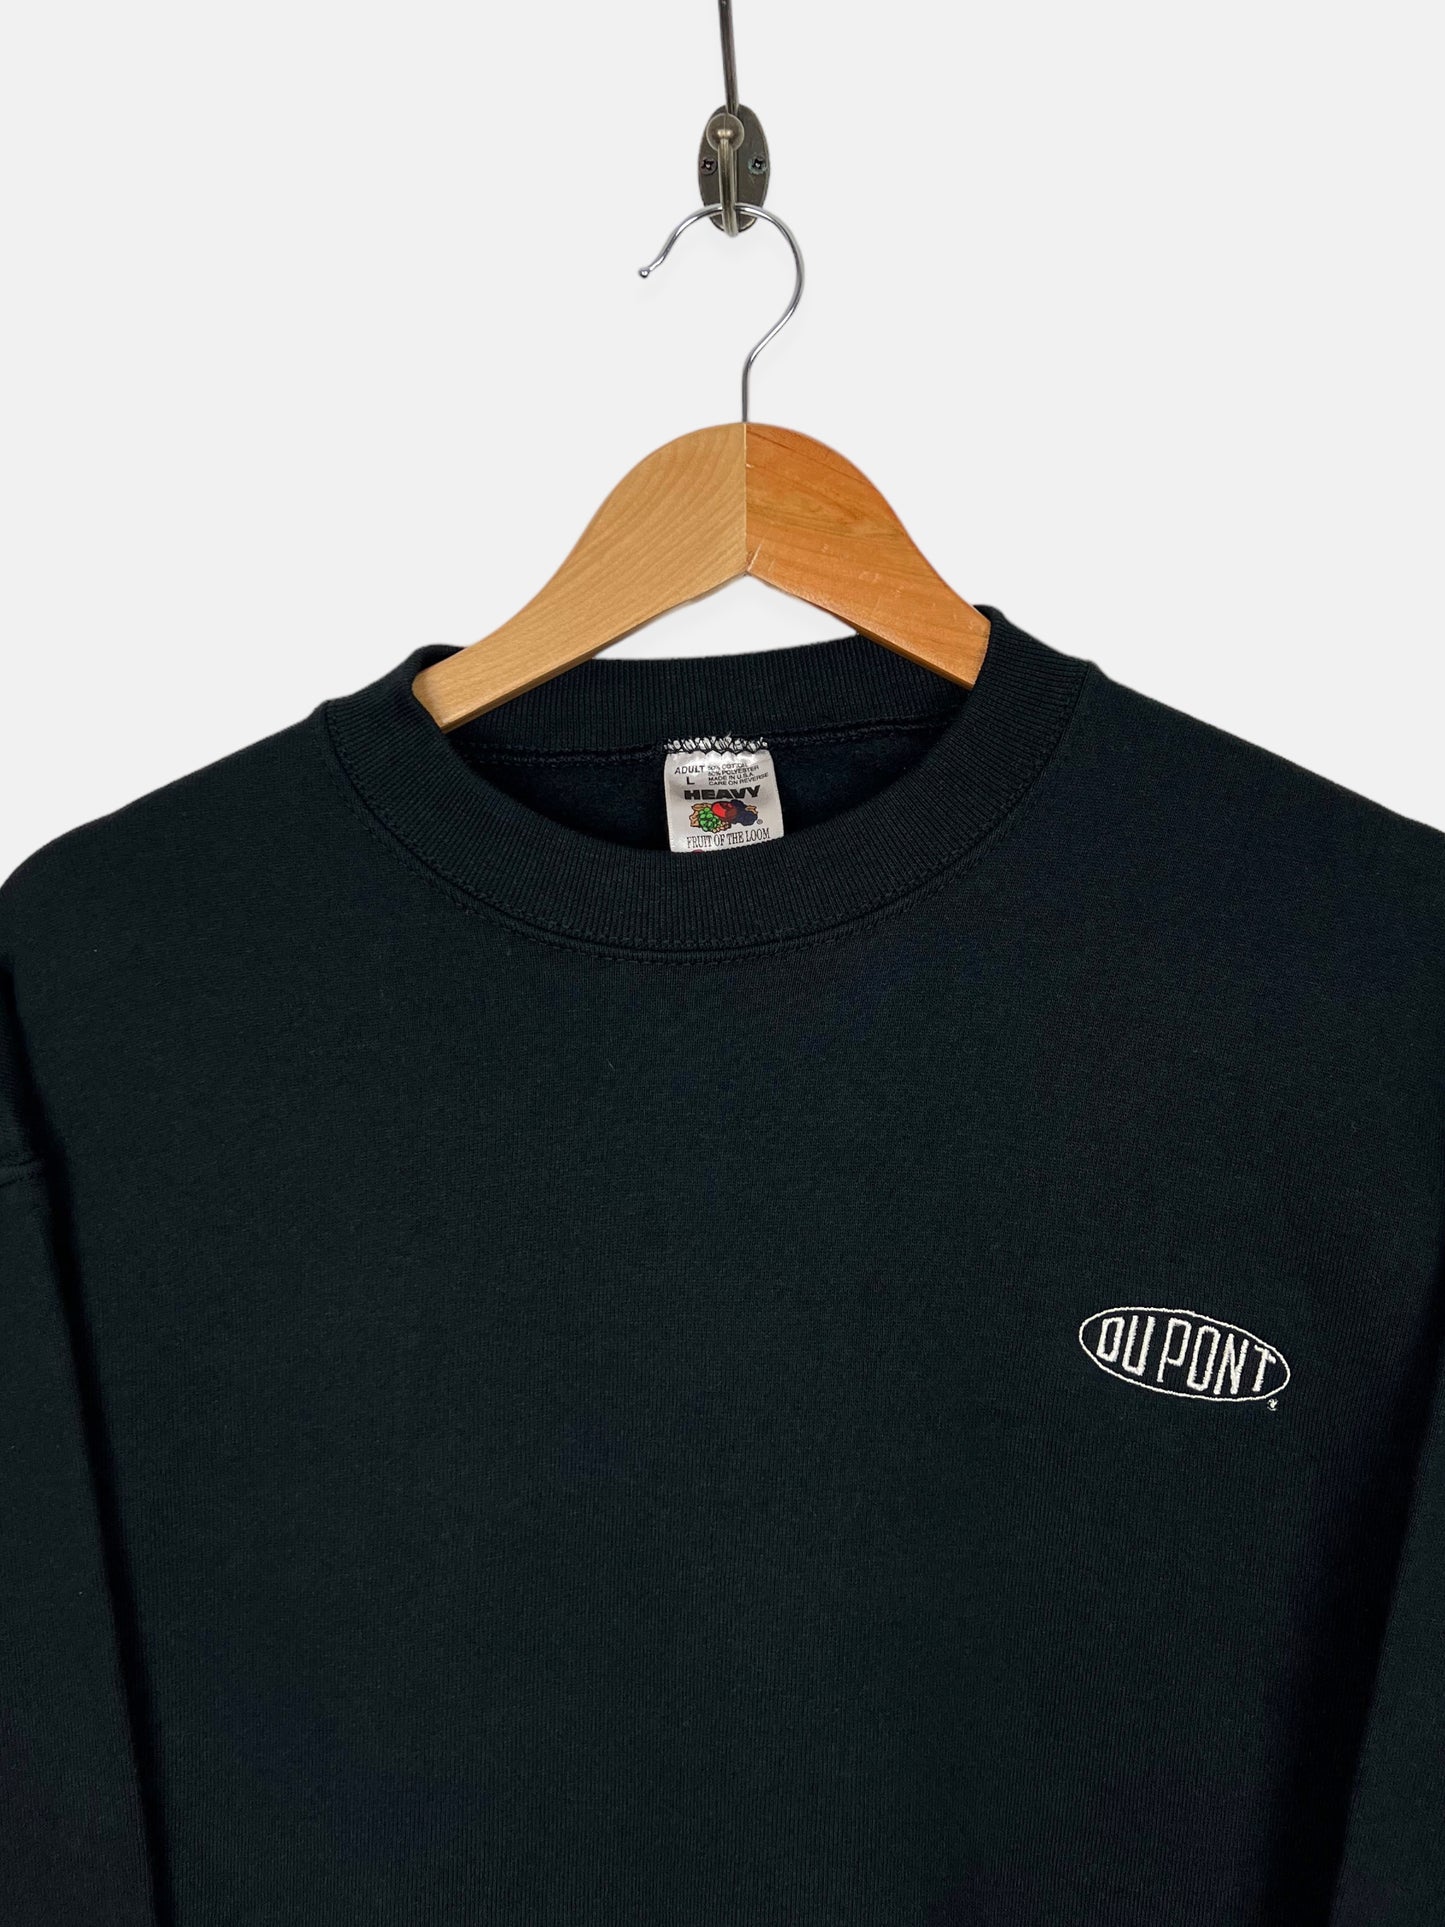 90's Du Pont USA Made Embroidered Vintage Sweatshirt Size M-L